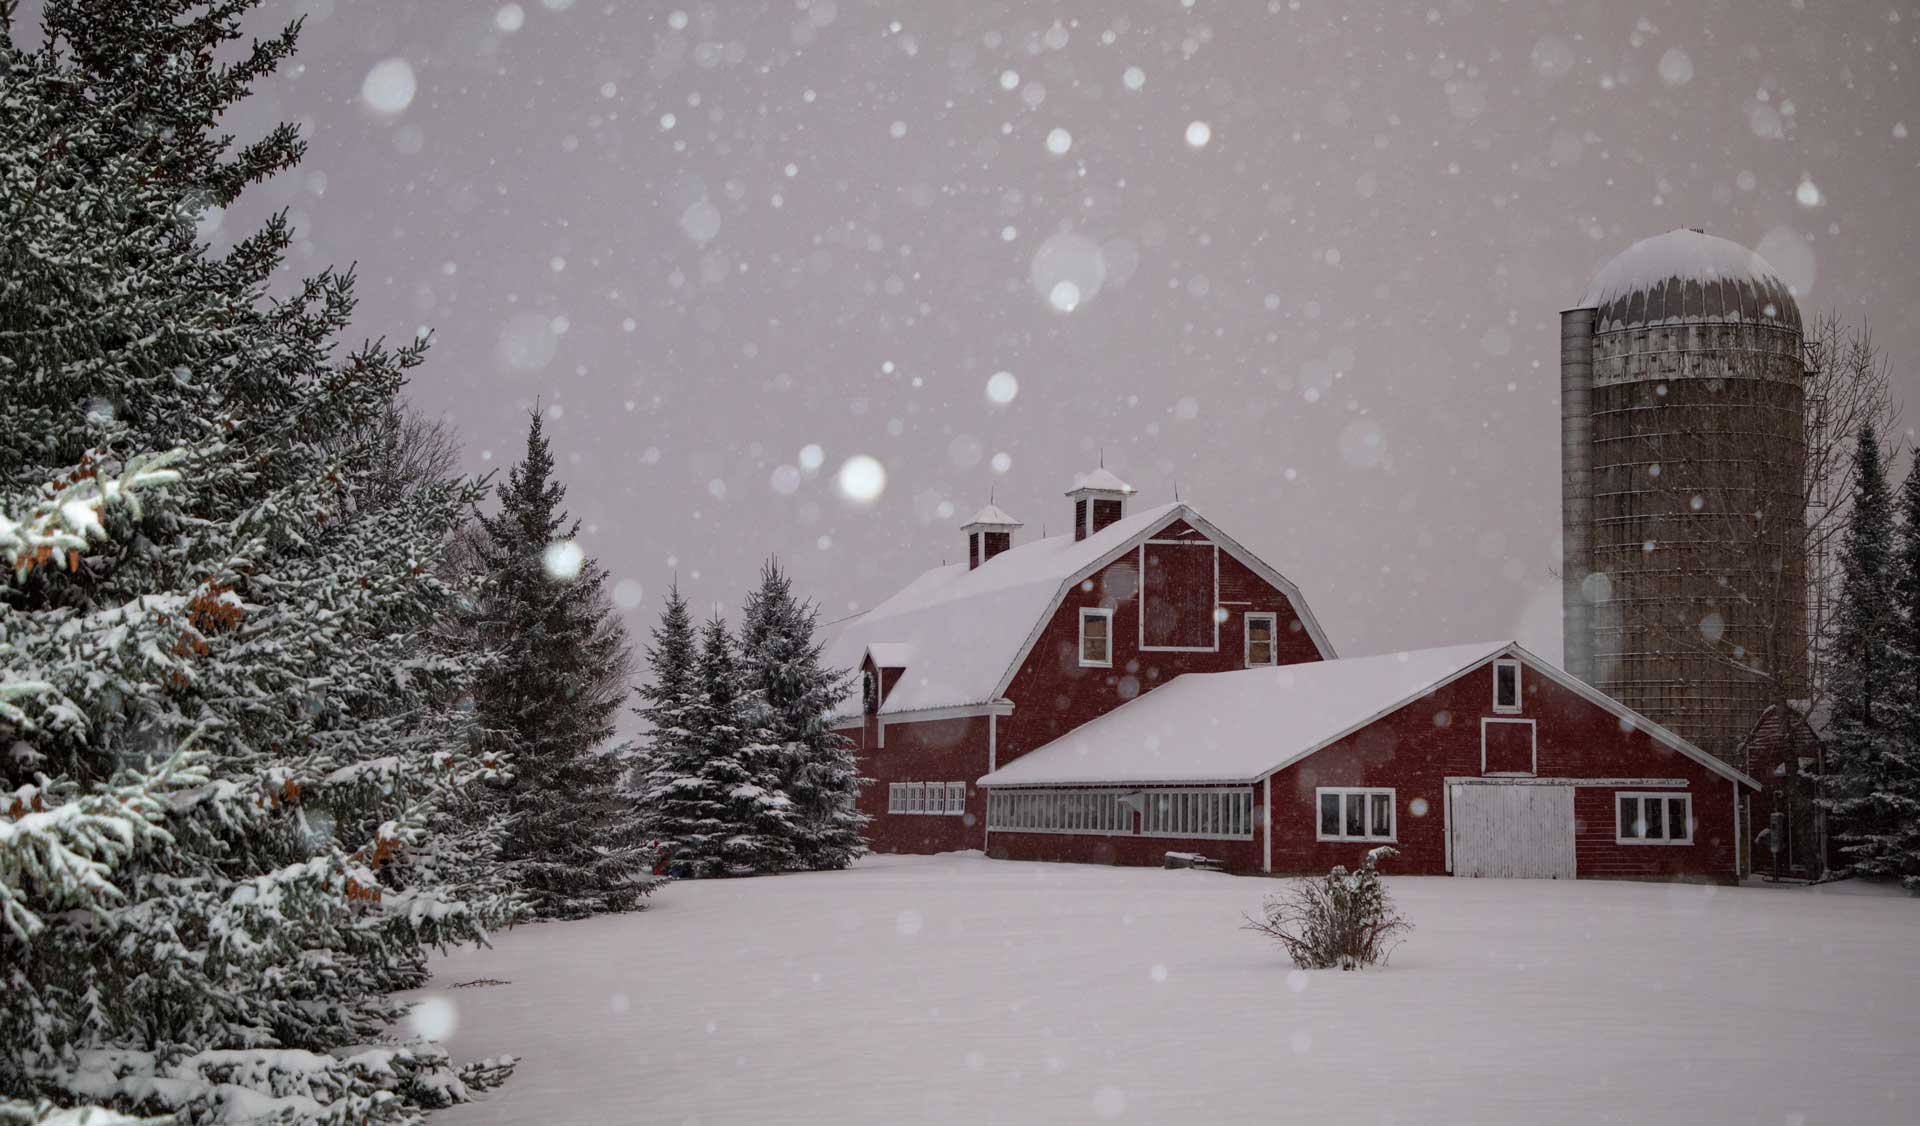 O'Brien Farm barn and silo in the winter